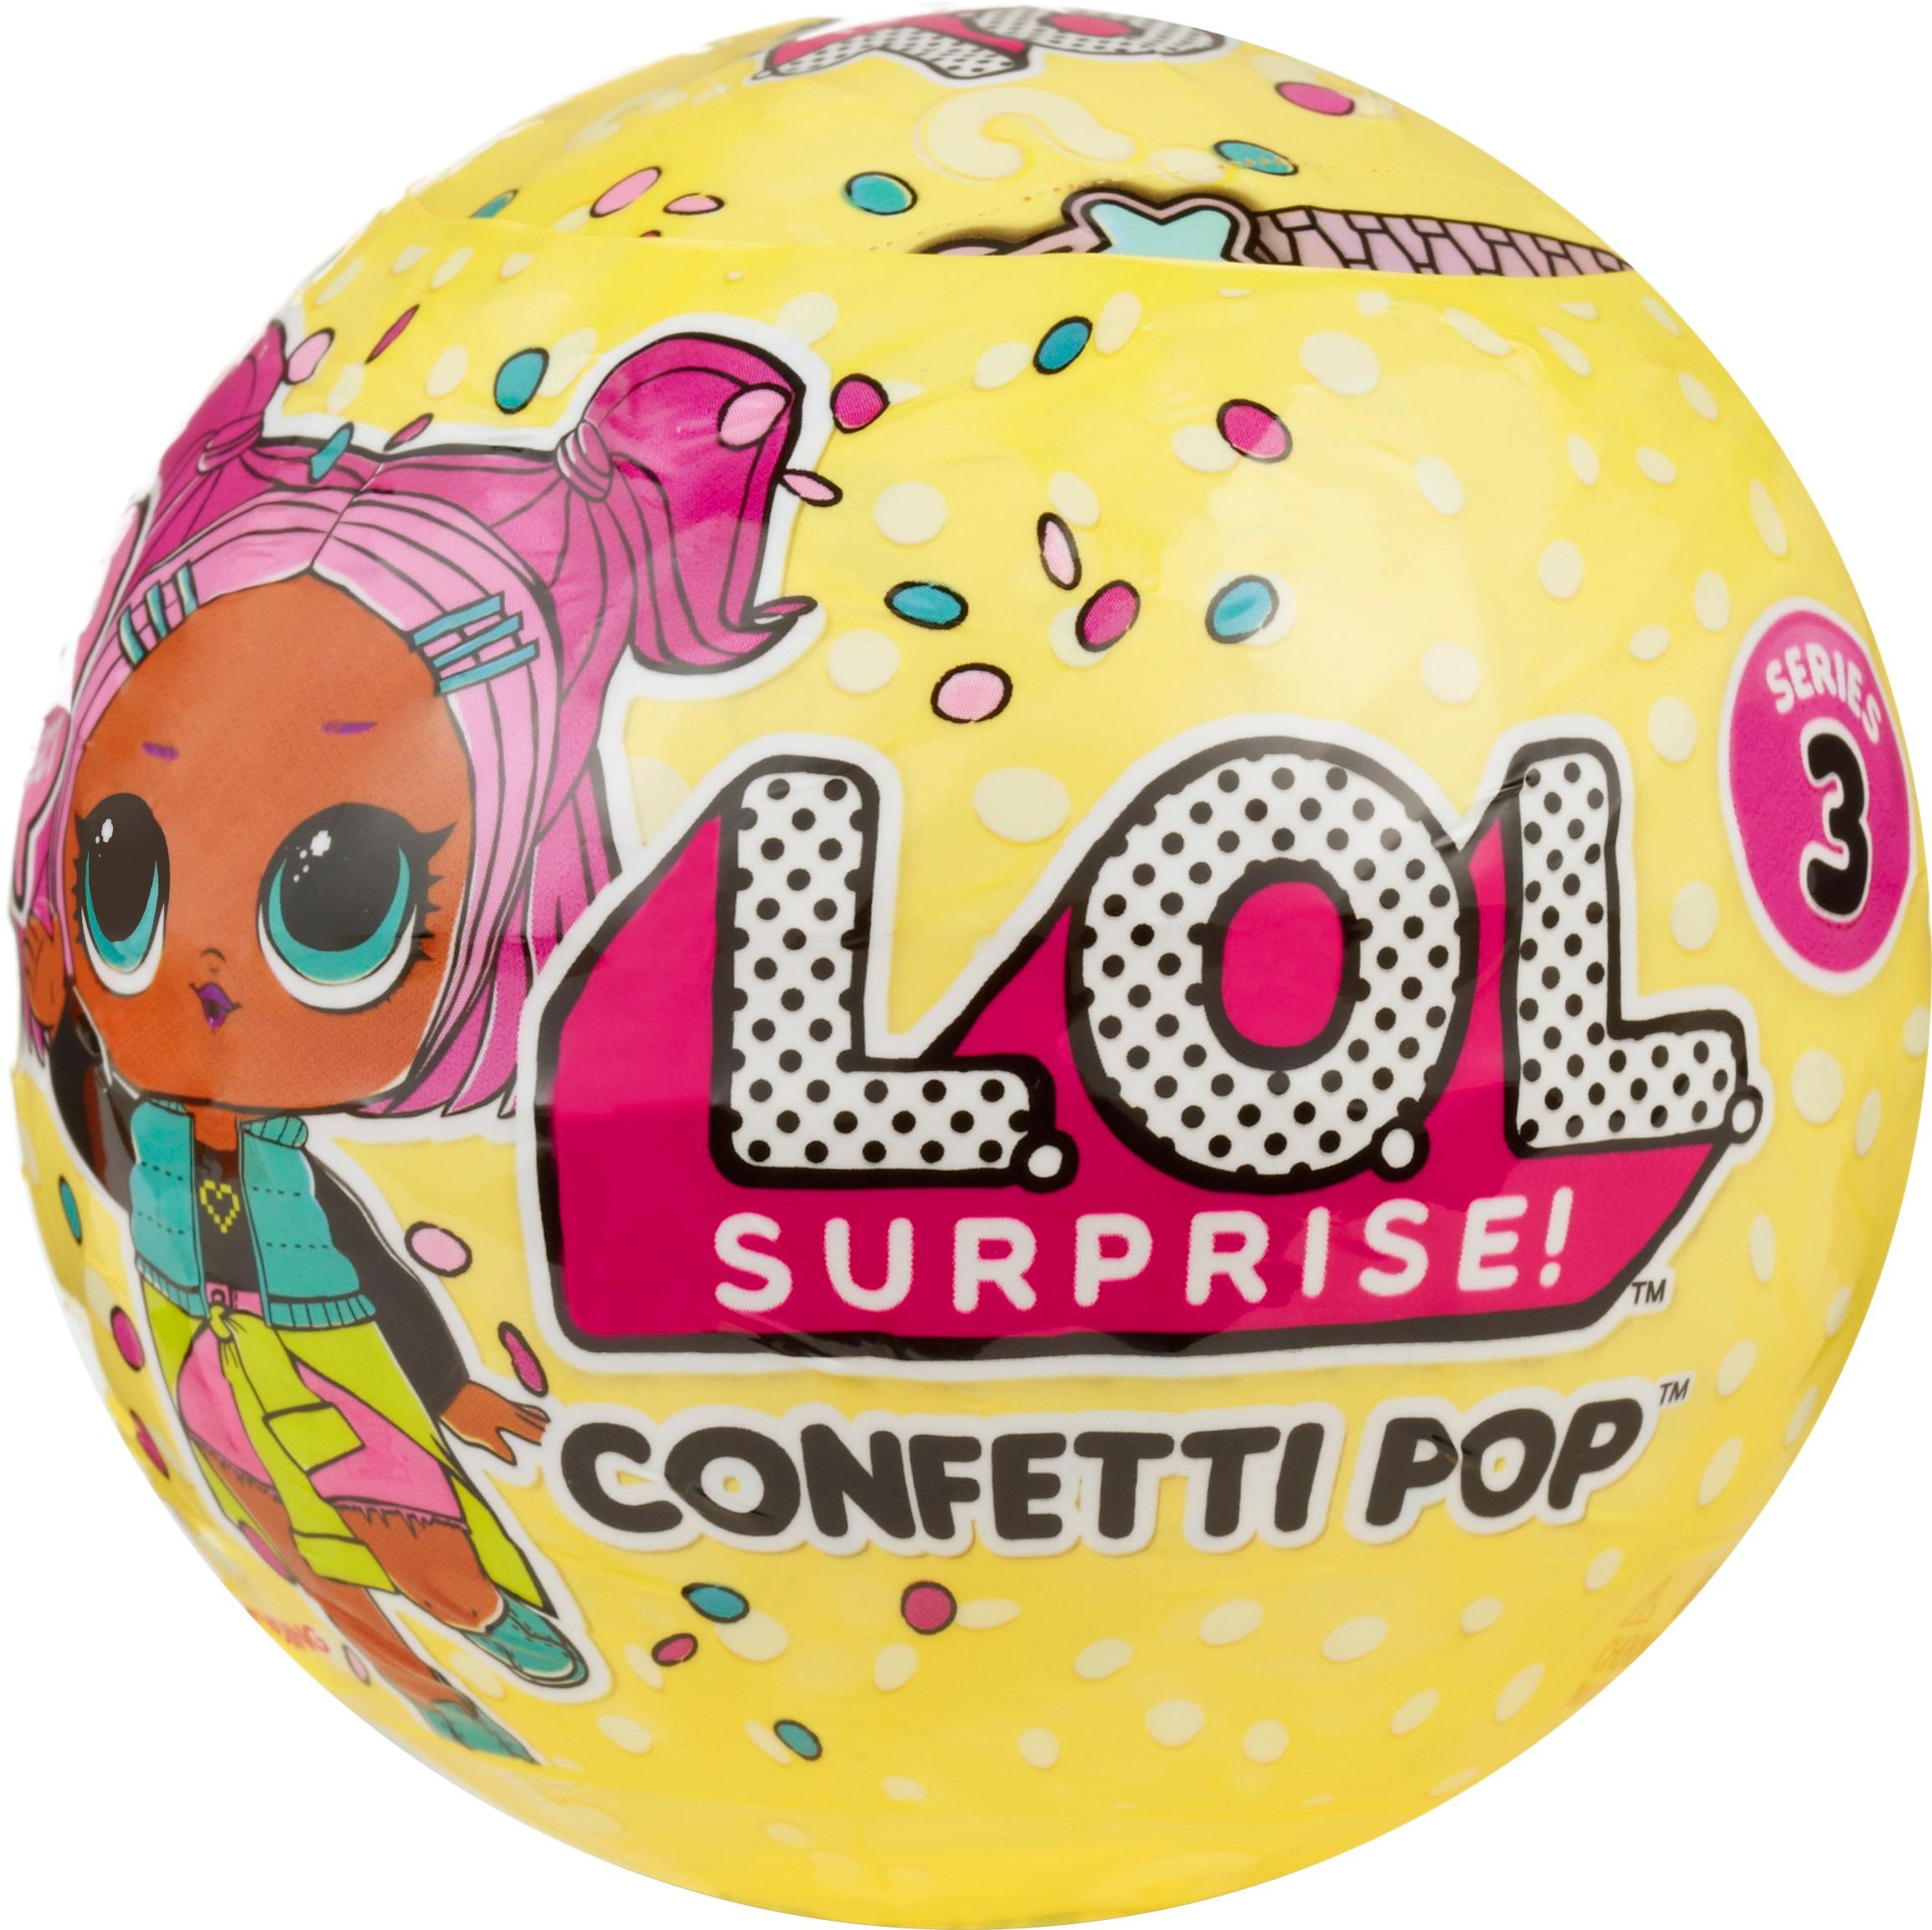 lol confetti pop best buy